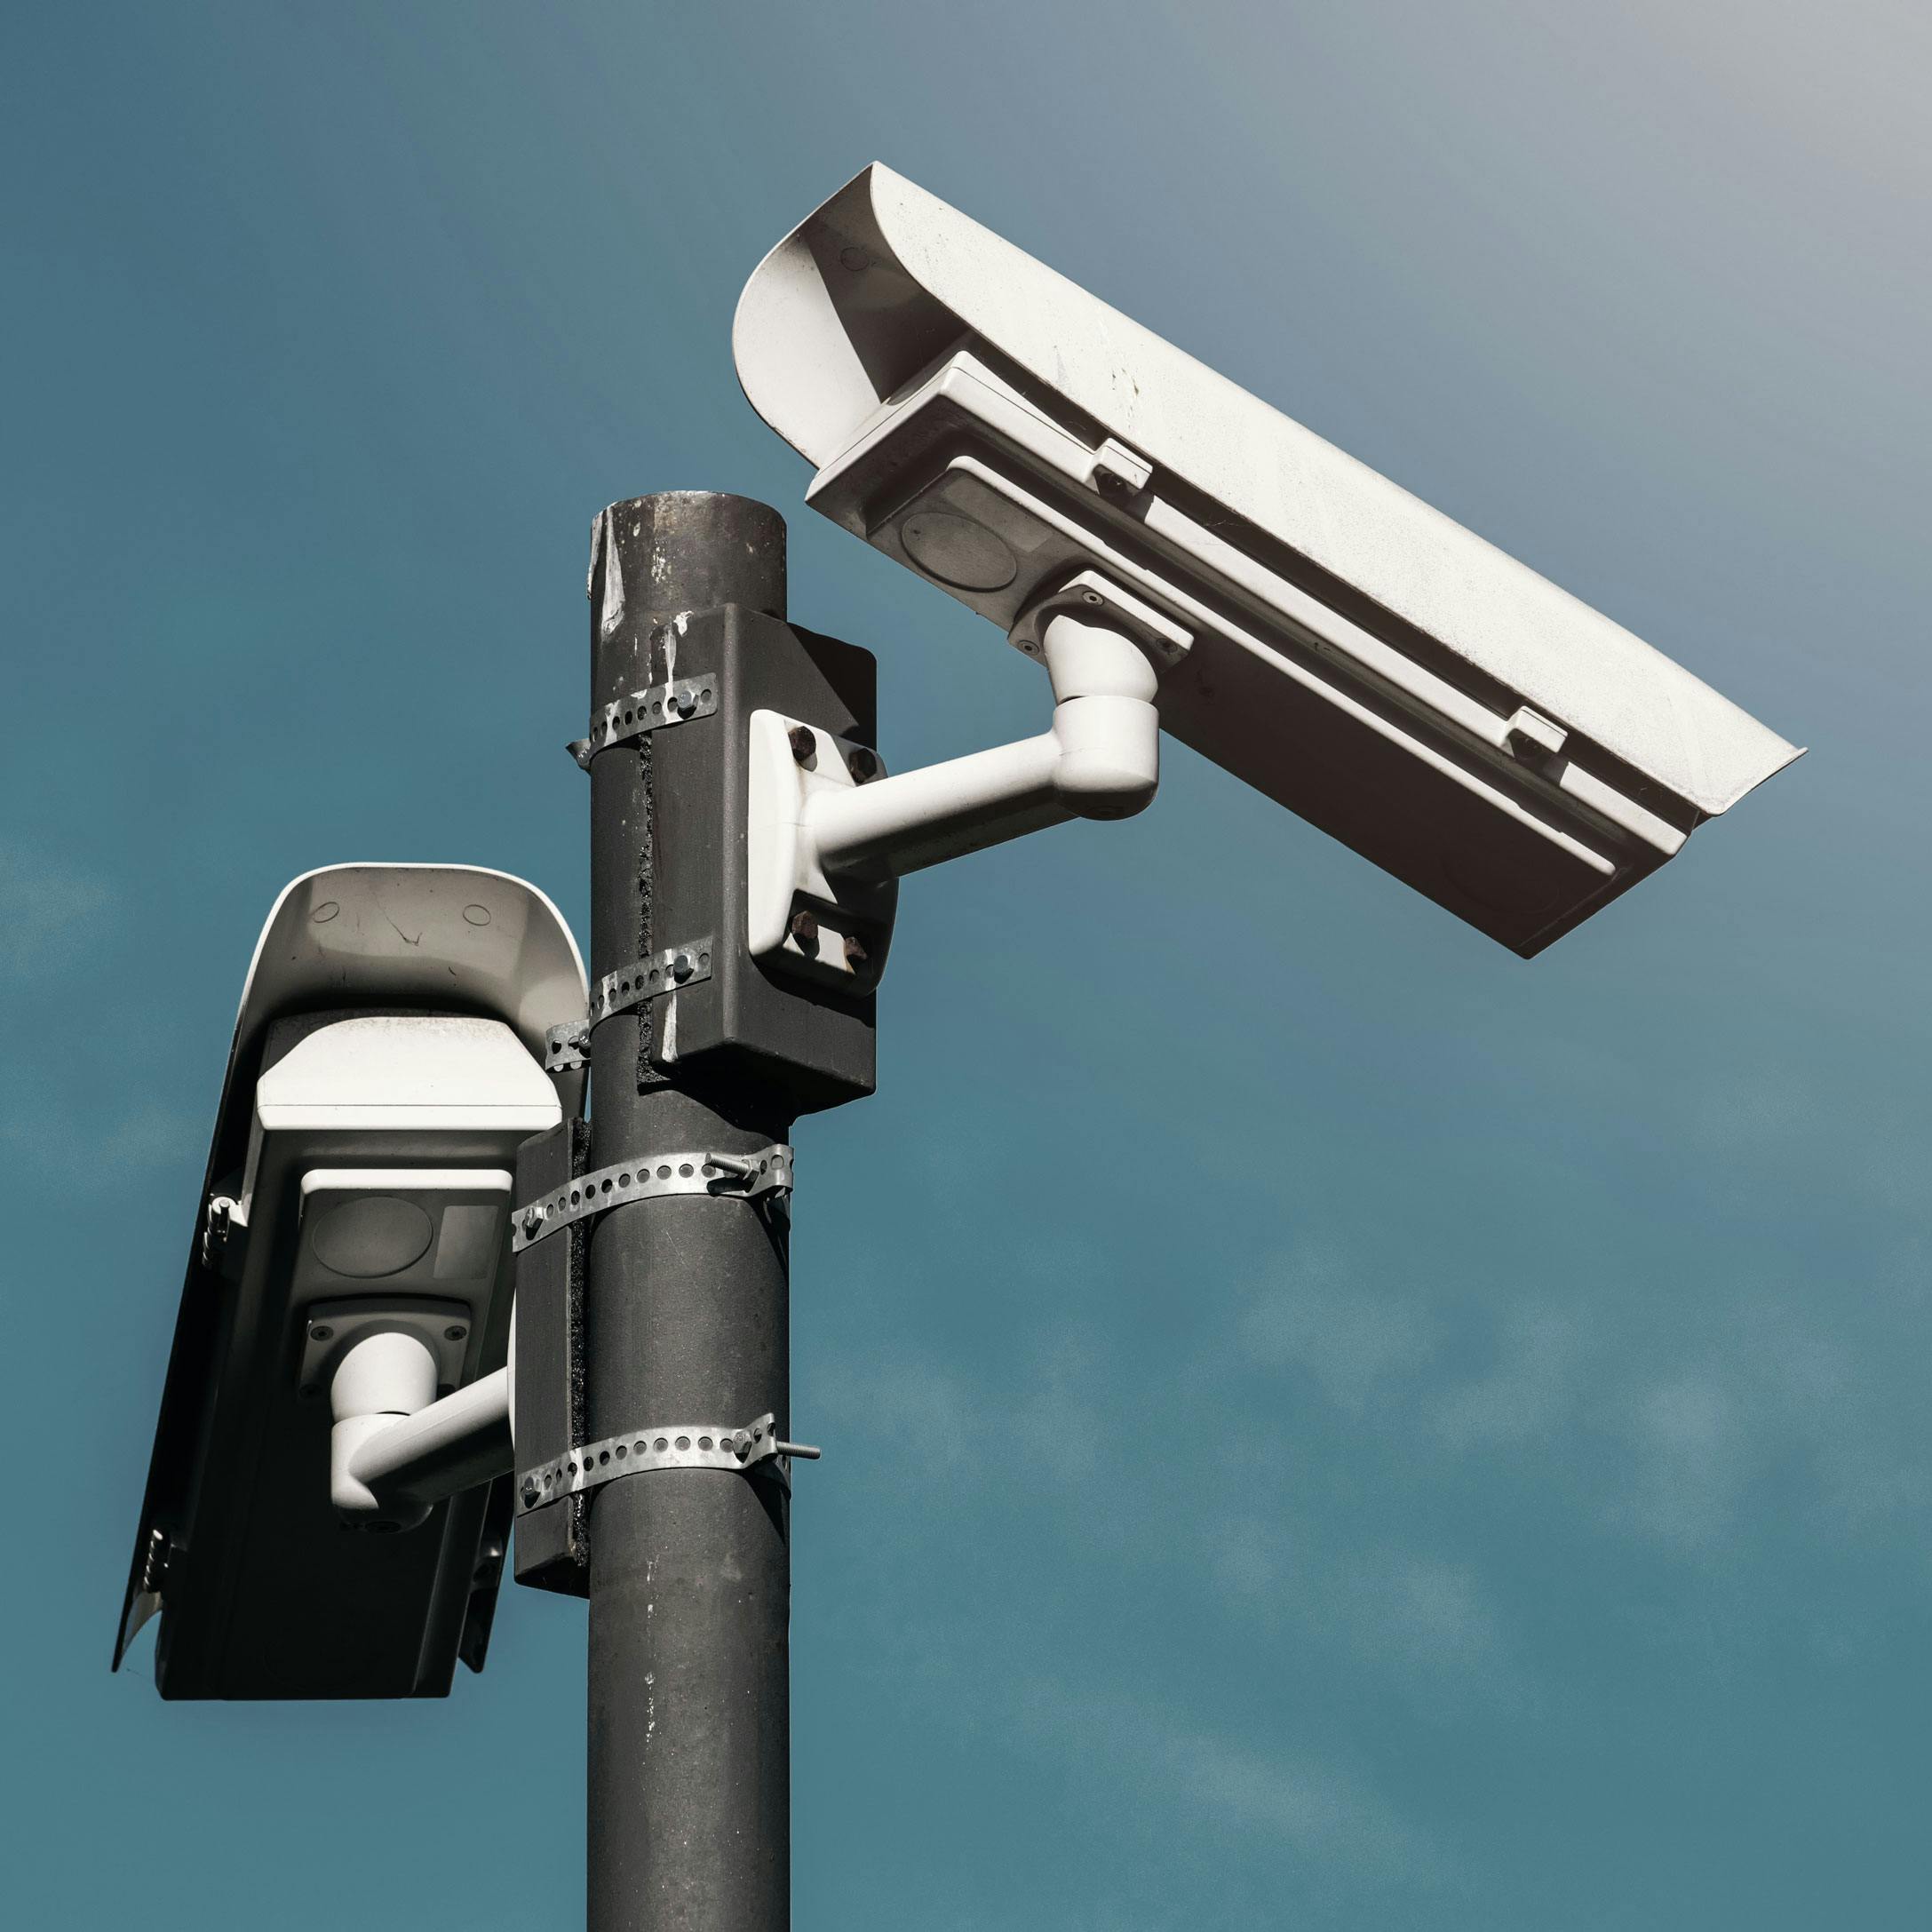 Security cameras on a pole